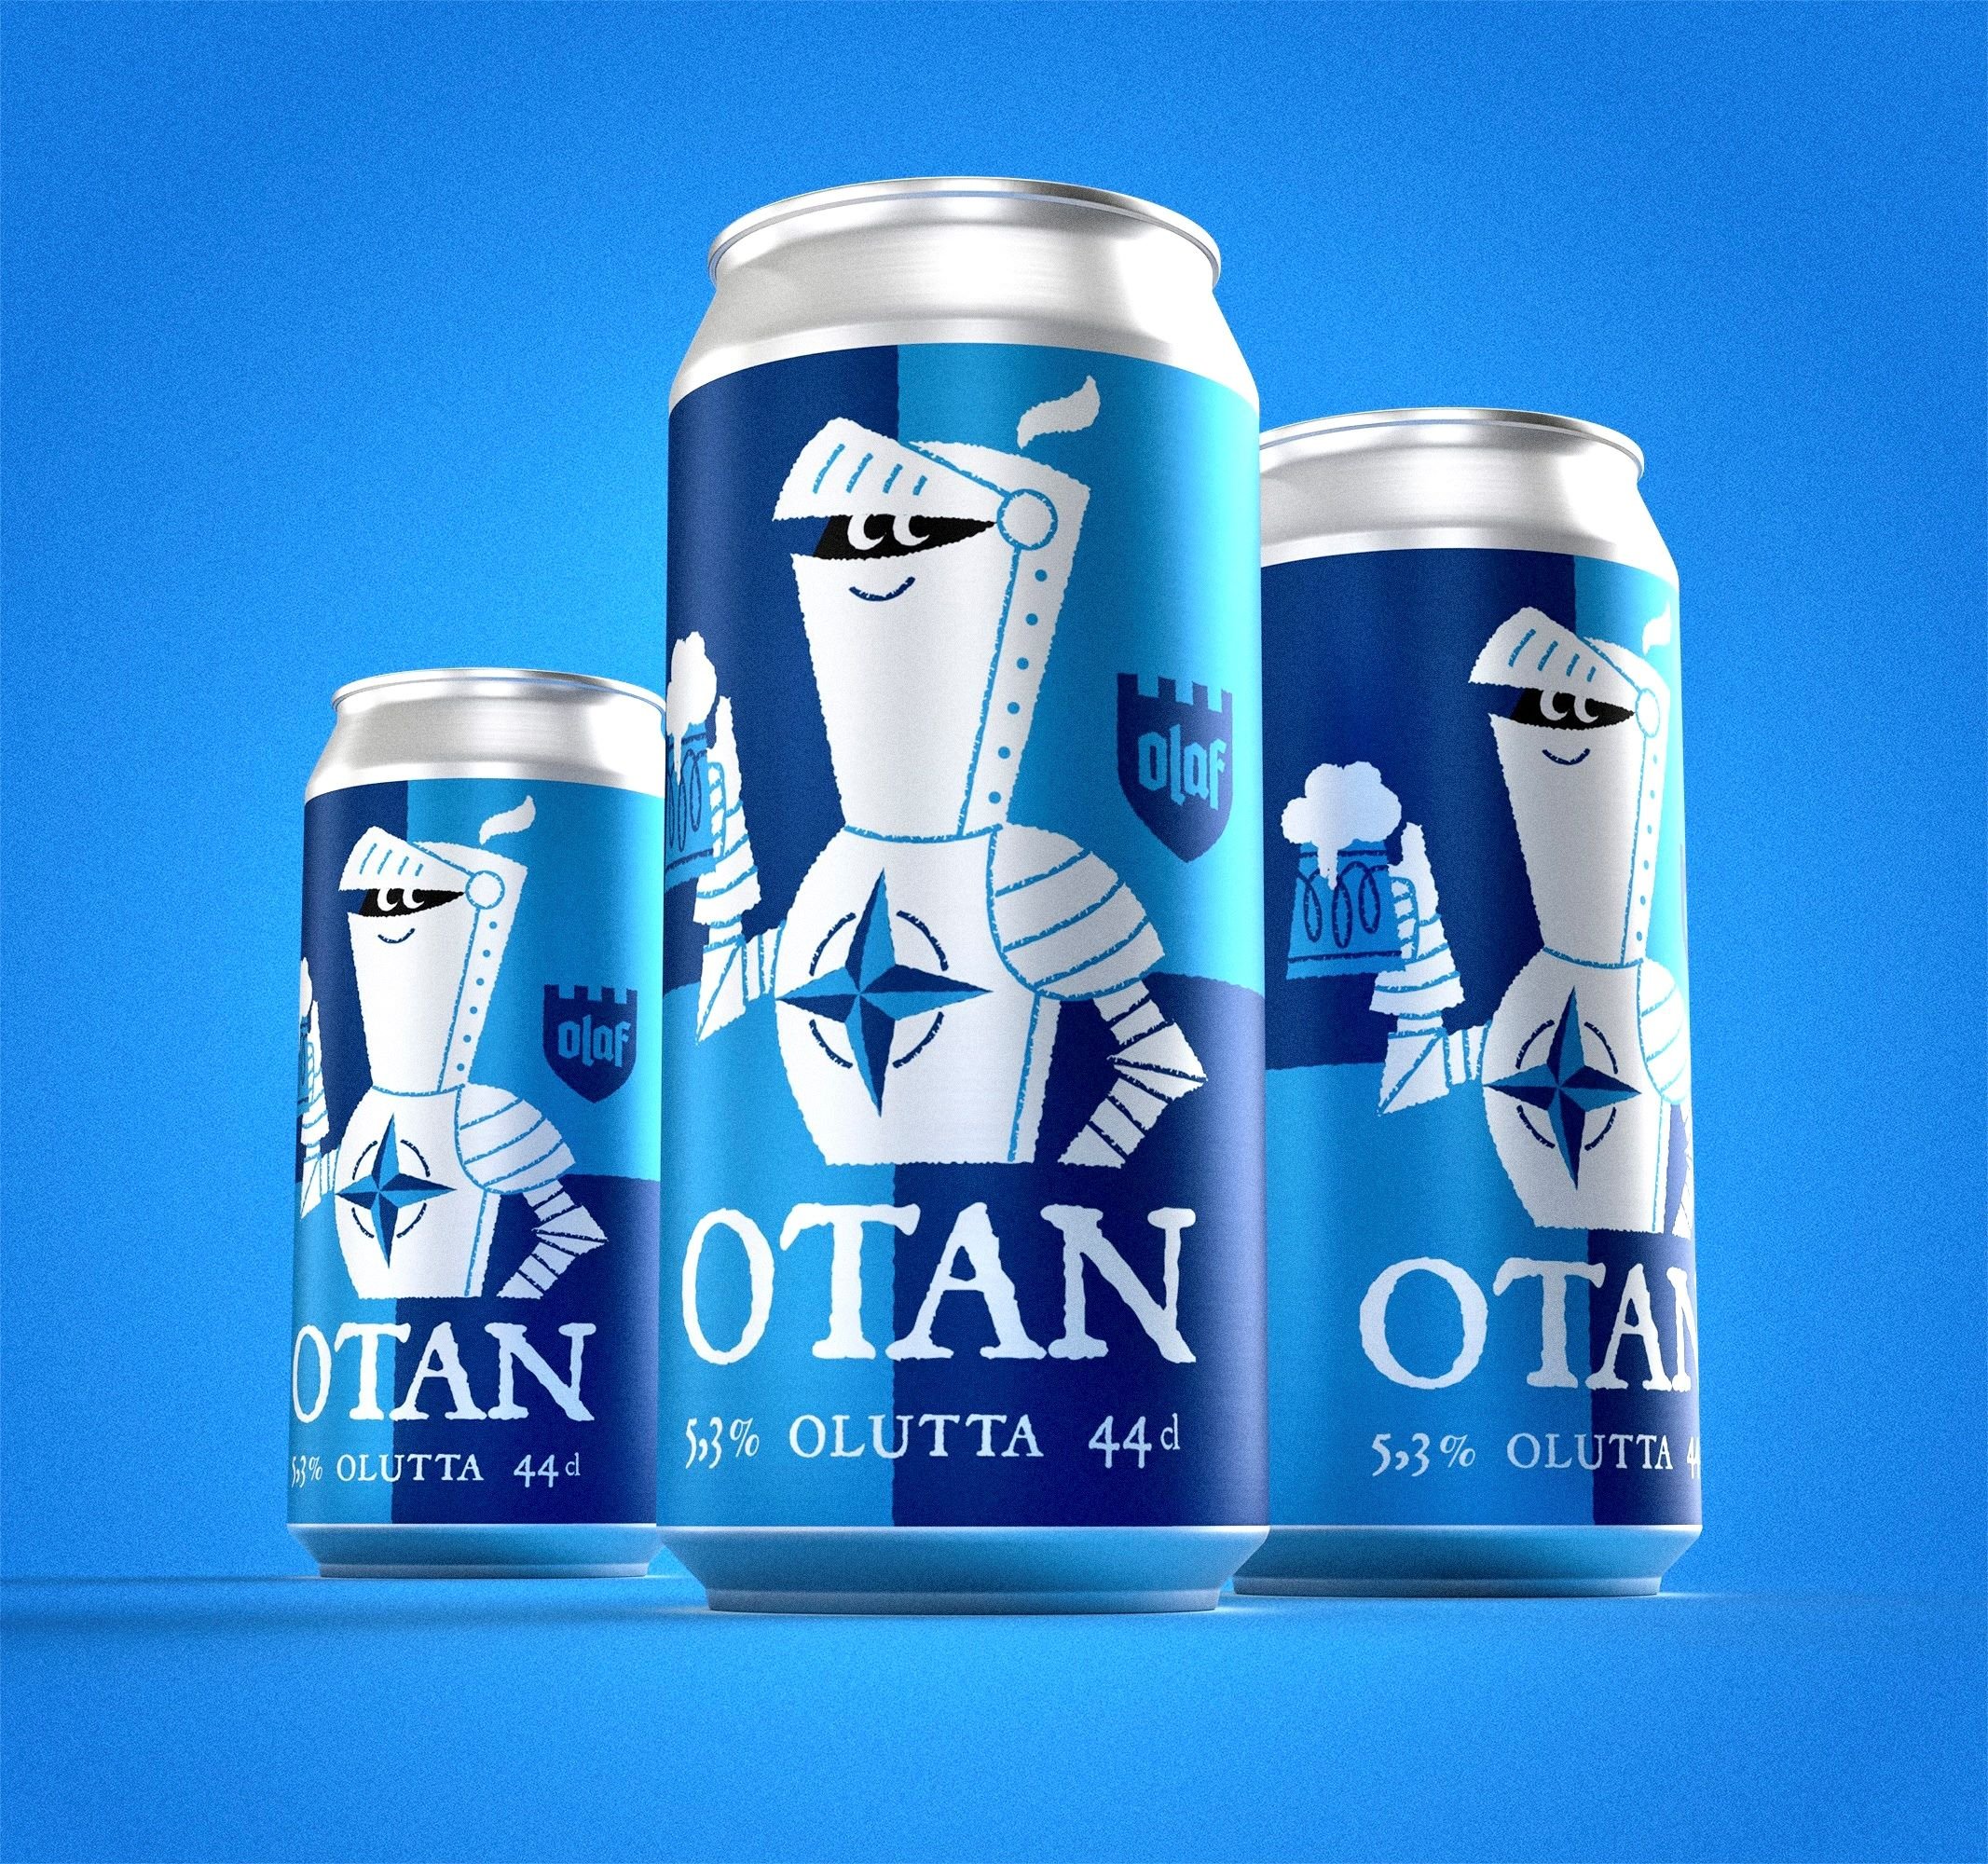 Otan Olutta, cerveza para celebrar adhesión de Finlandia a la OTAN   Olaf Brewing